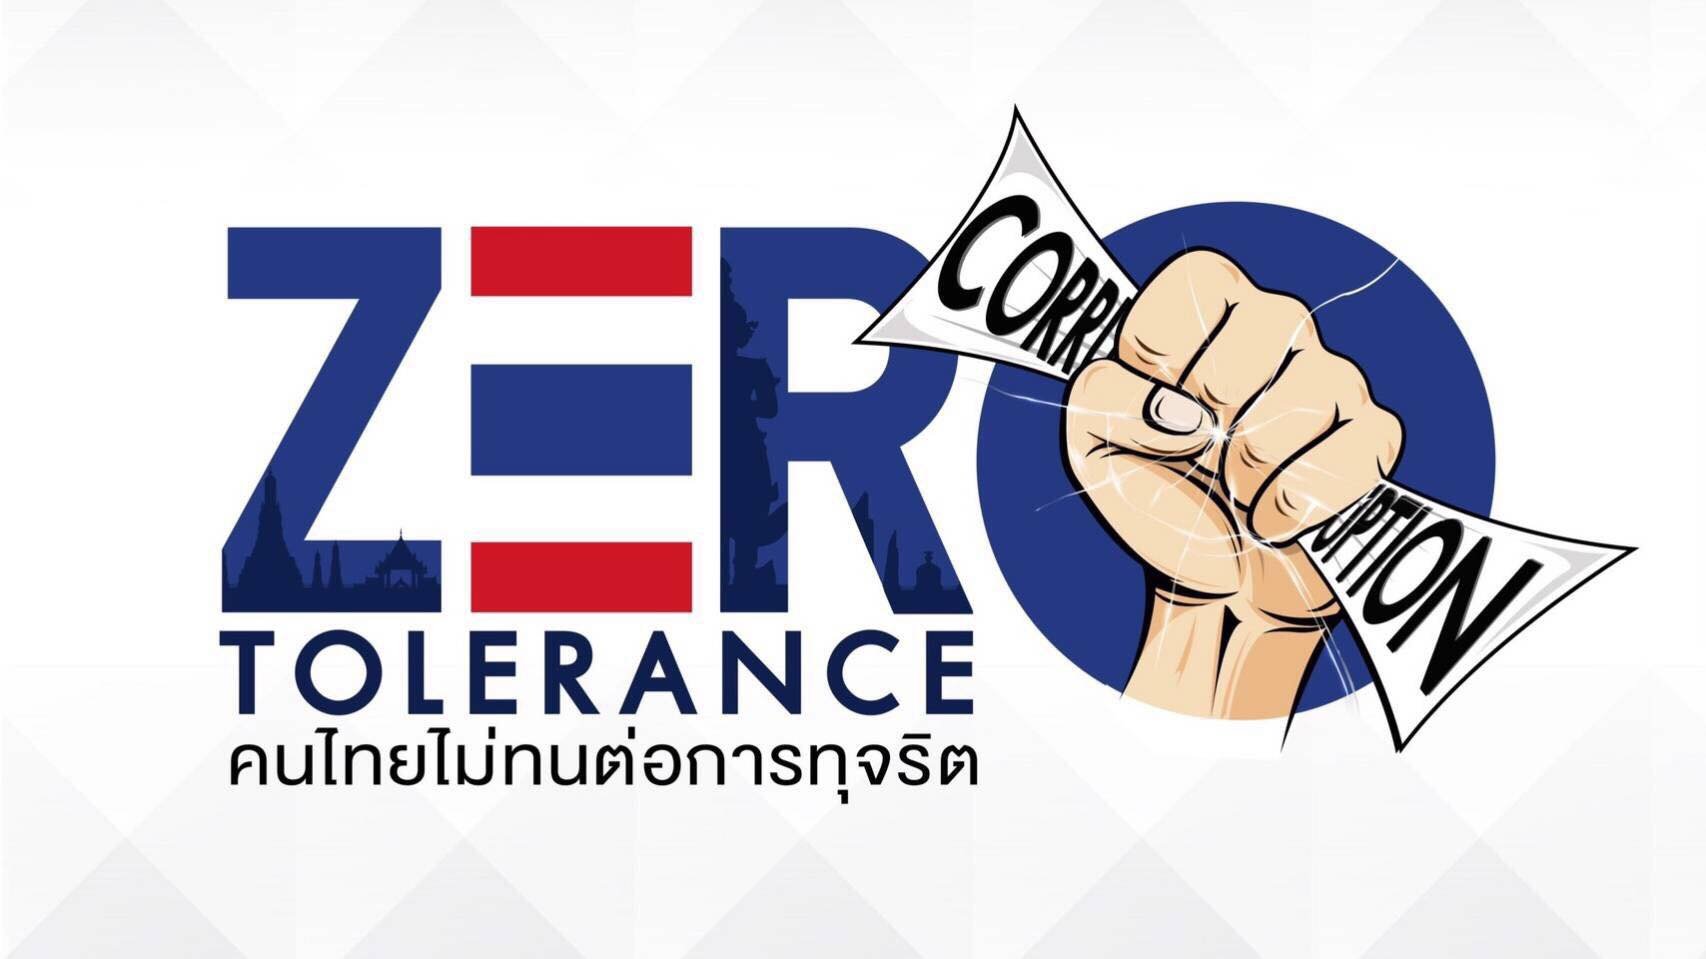 รายการ “คนไทยไม่ทนต่อการทุจริต” วันอาทิตย์ที่ 8 เมษายน 2561 เวลา 18.30-1900 น.